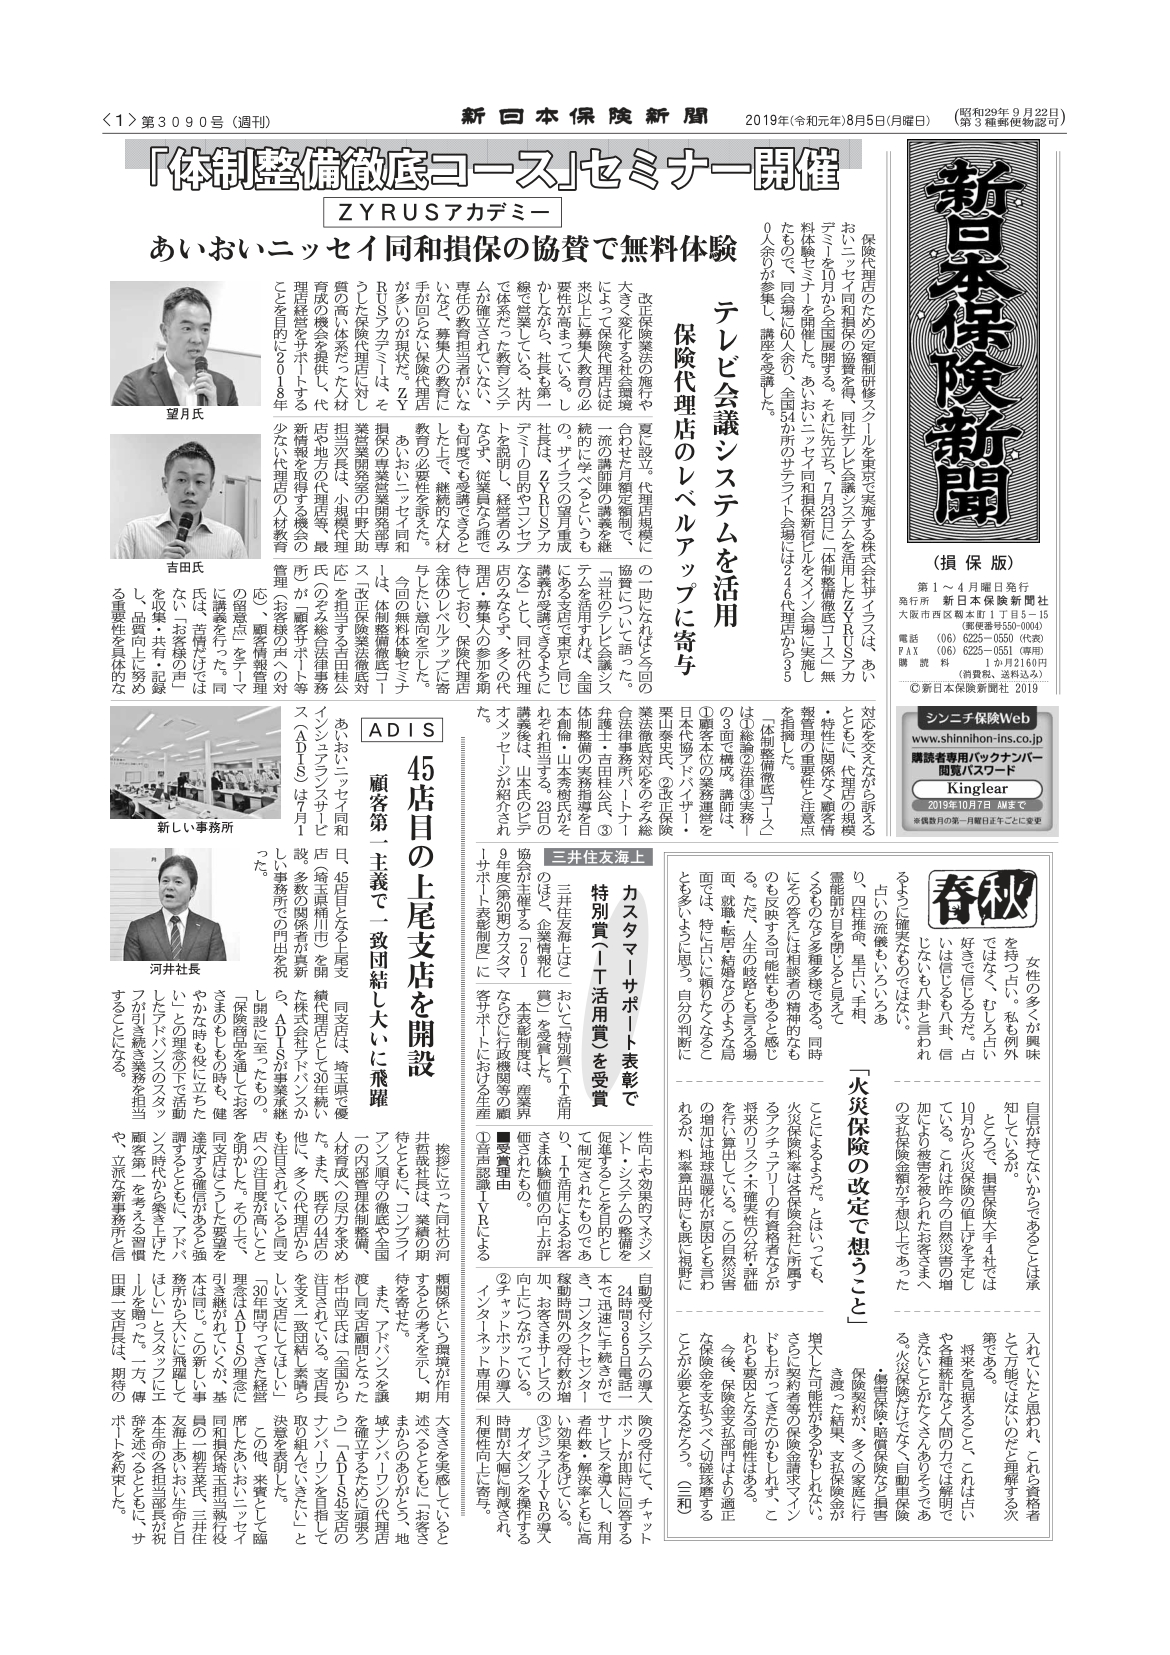 2019.8.5 新日本保険新聞